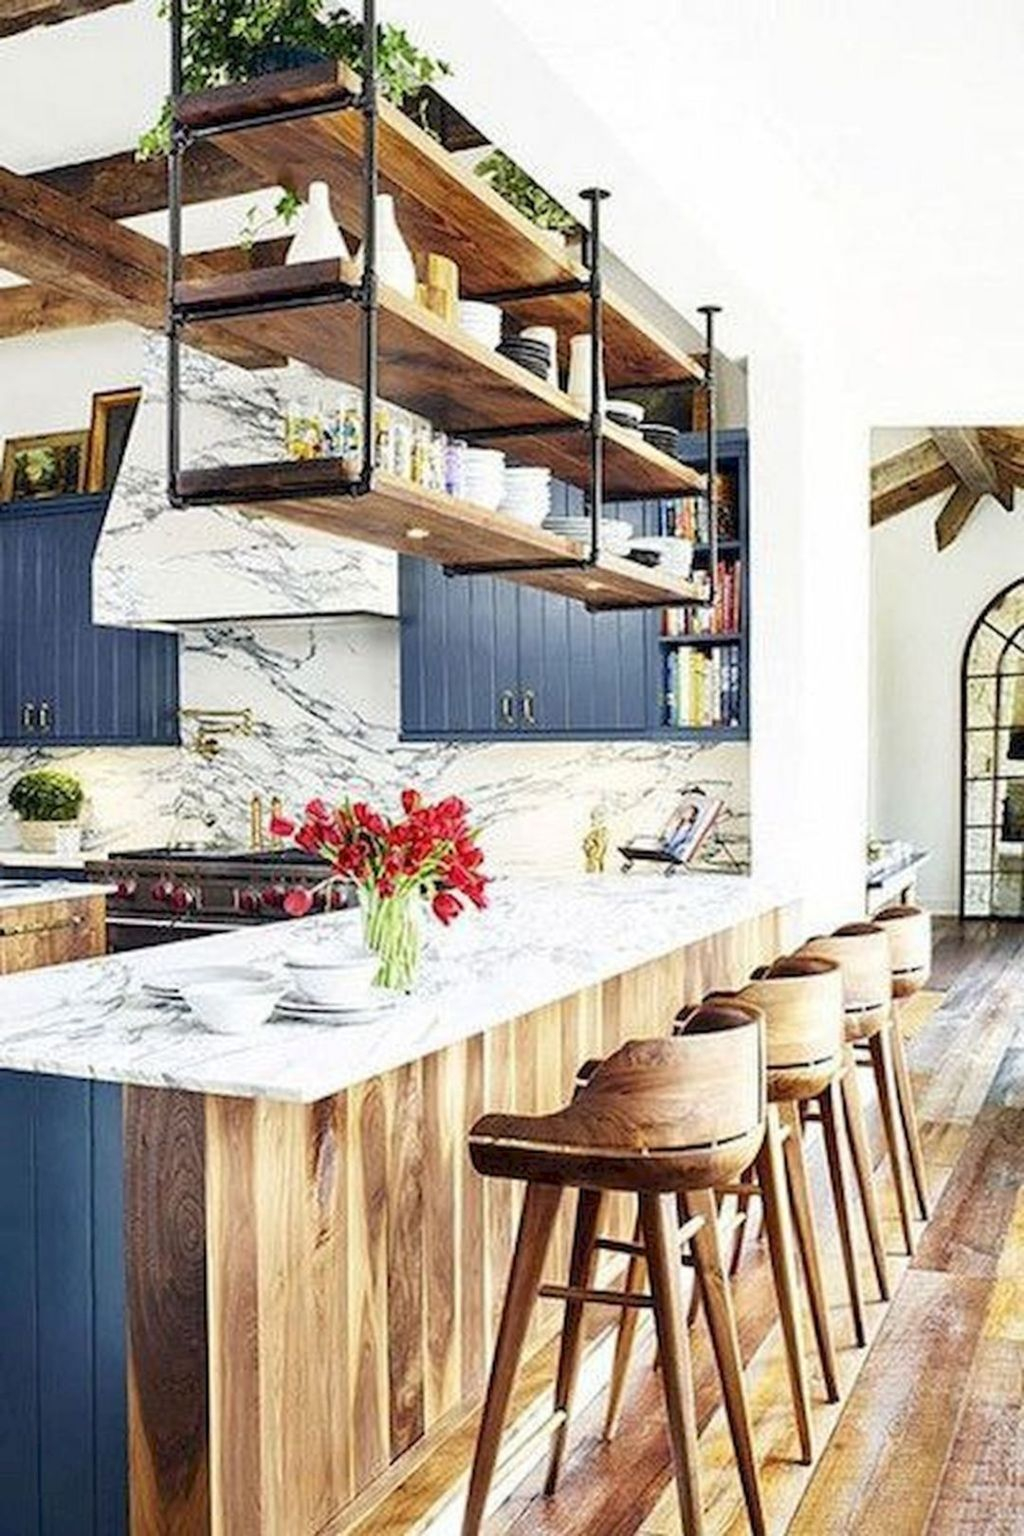 Wonderful Industrial Kitchen Shelf Design Ideas To Organize Your Kitchen30